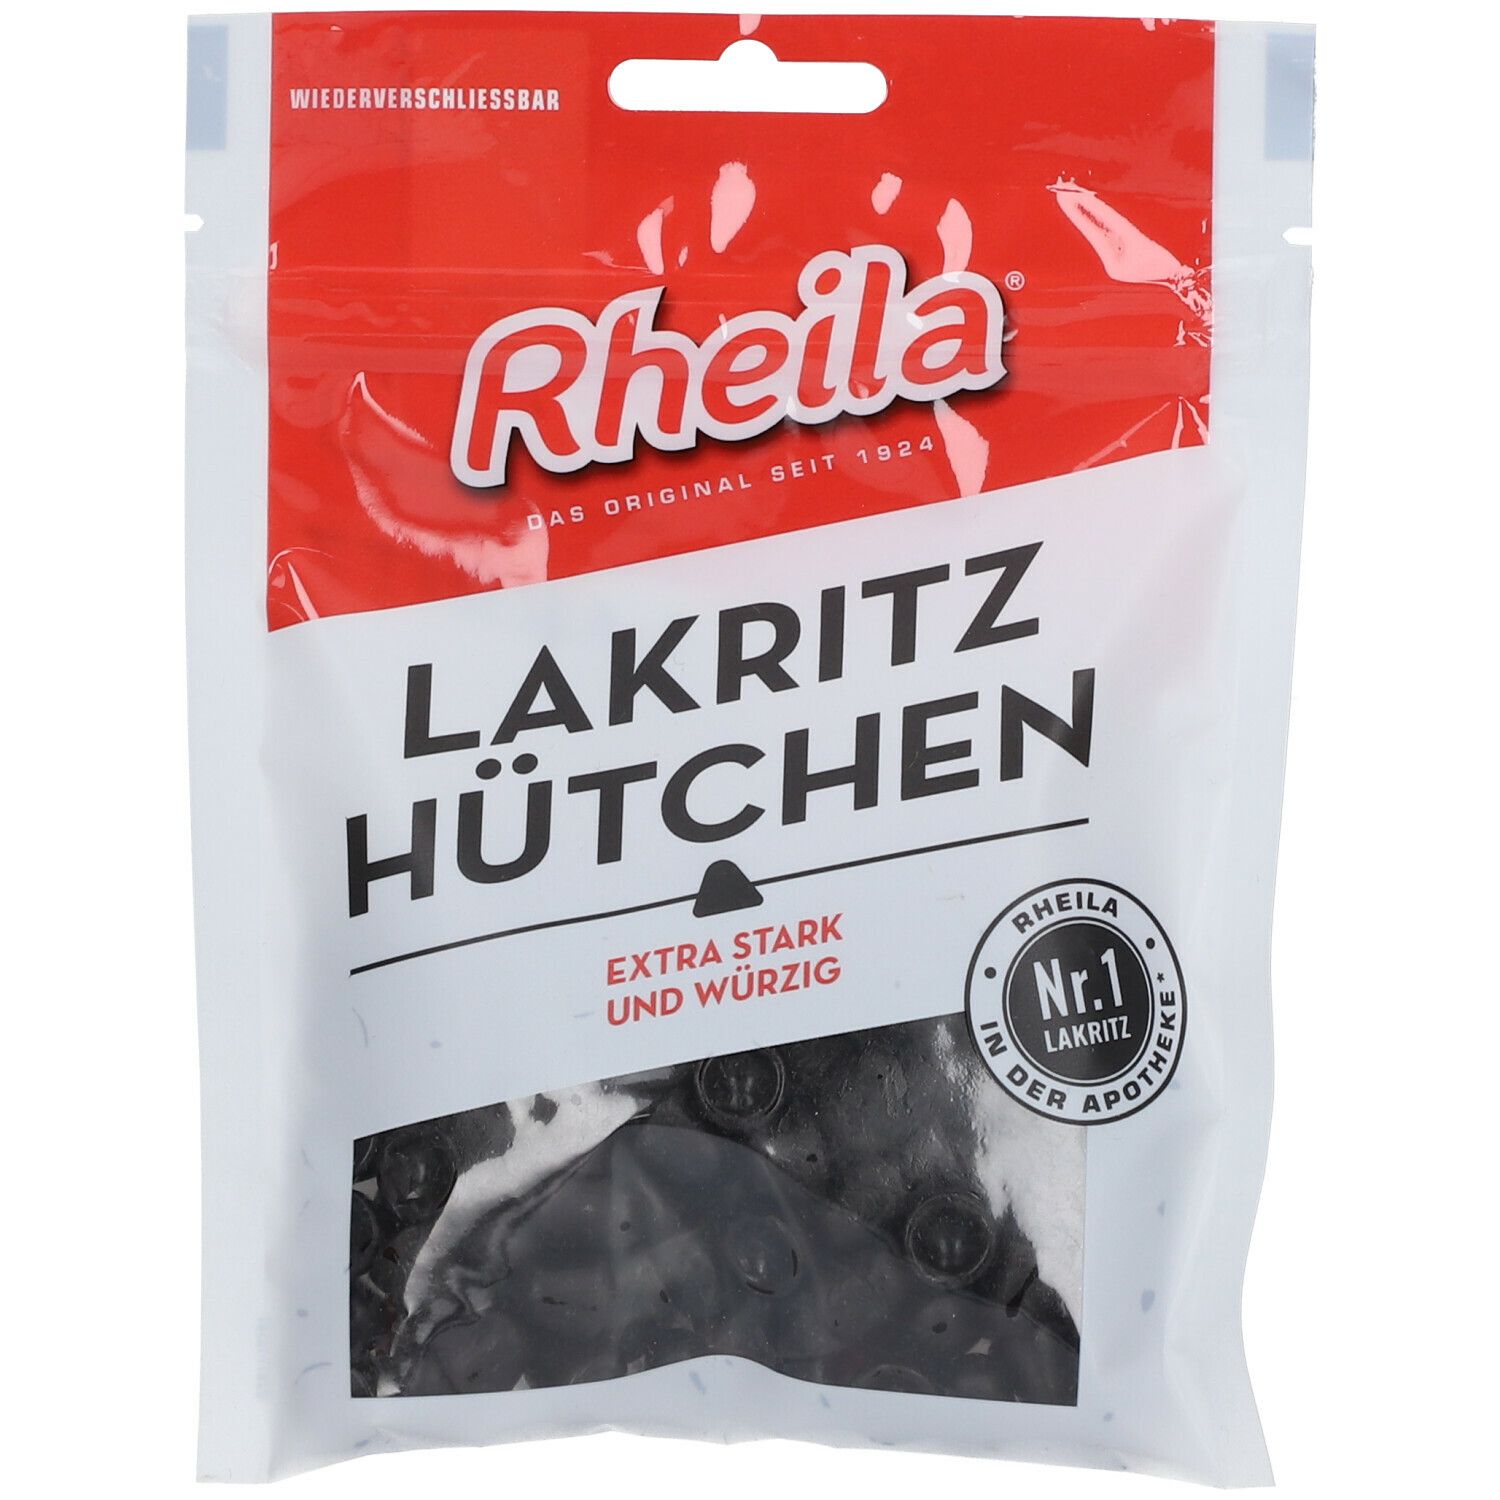 Rheila® Lakritz Hütchen zuckerhaltig